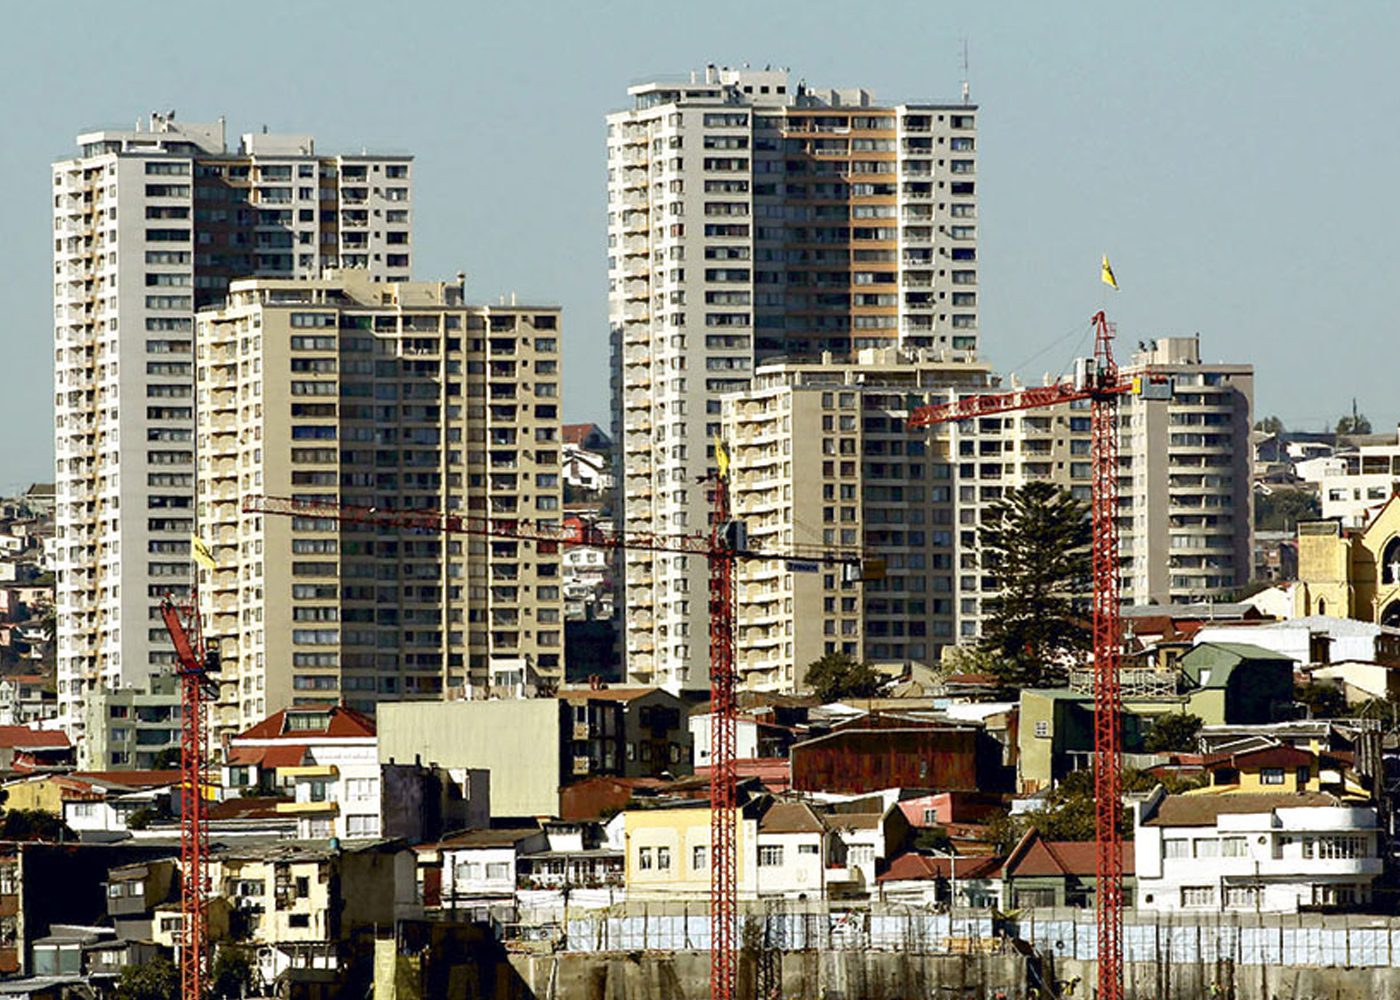 Anatomías de la verticalización y políticas de densificación residencial en Santiago, Valparaíso y Concepción ¿Hacia áreas metropolitanas más integradas y sustentables?